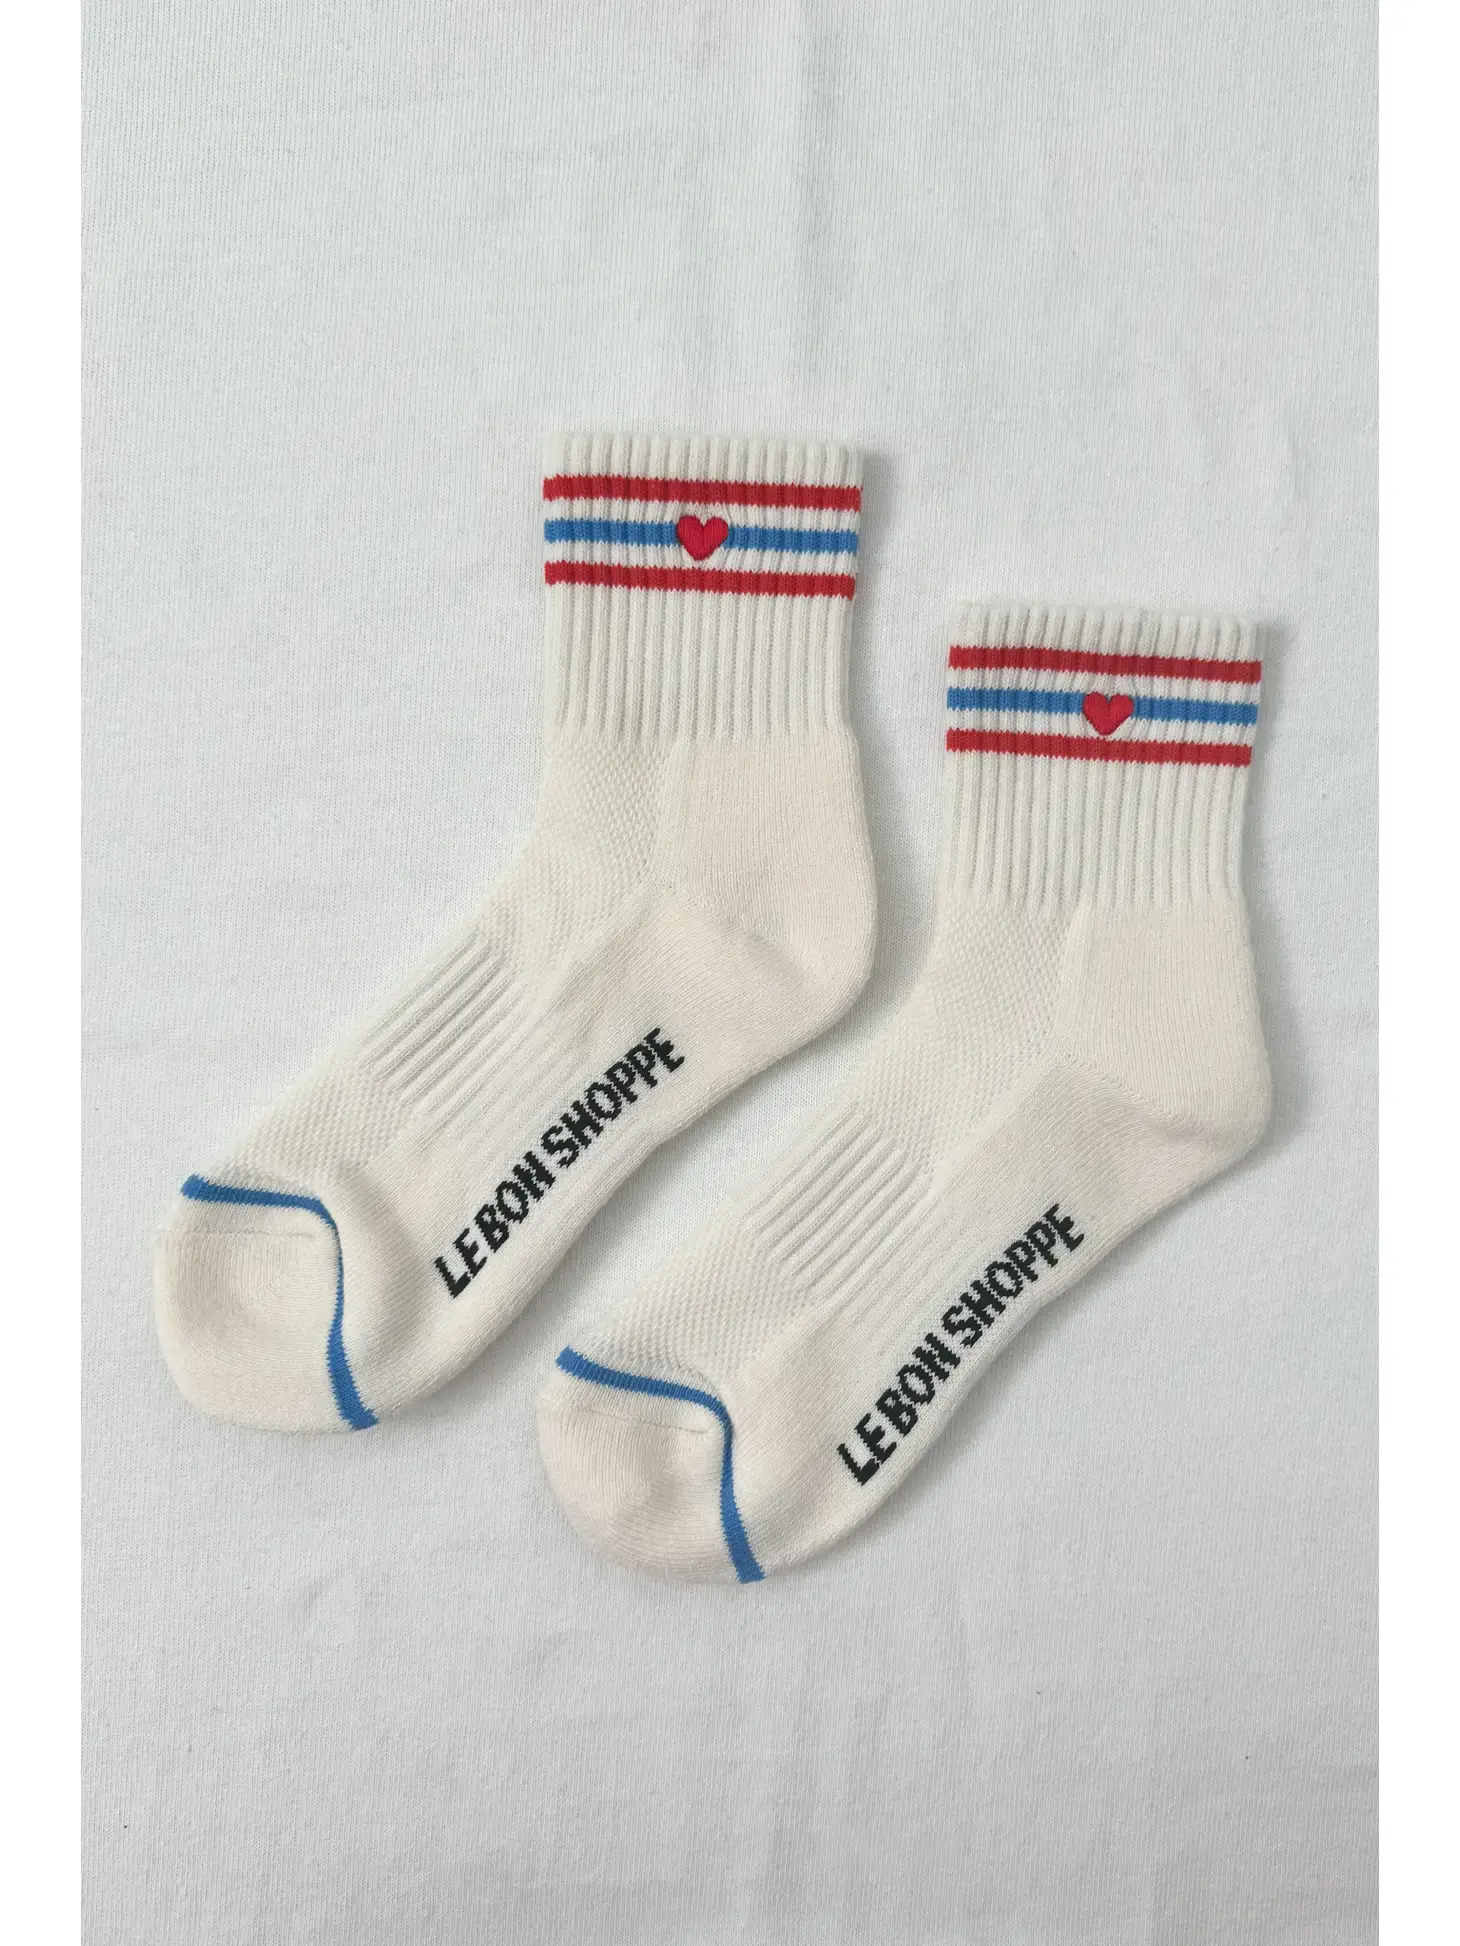 Le Bon Shoppe - Embroidered Girlfriend Socks - Leche Heart